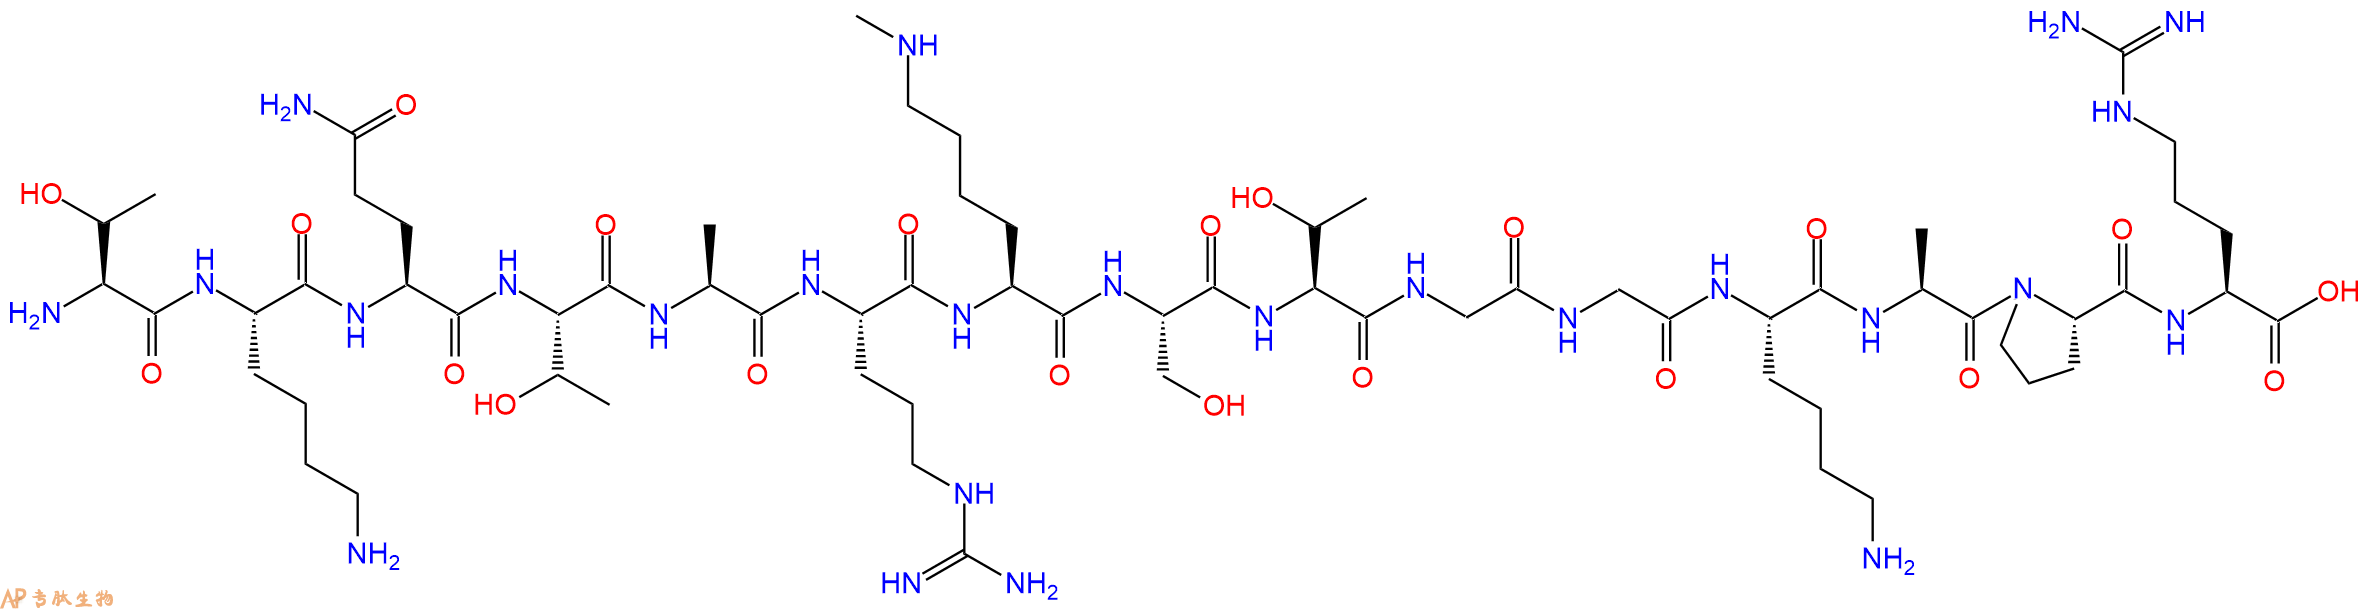 专肽生物产品组蛋白肽段[Lys(Me)9]-Histone H3(3-17), H3K9(Me1)